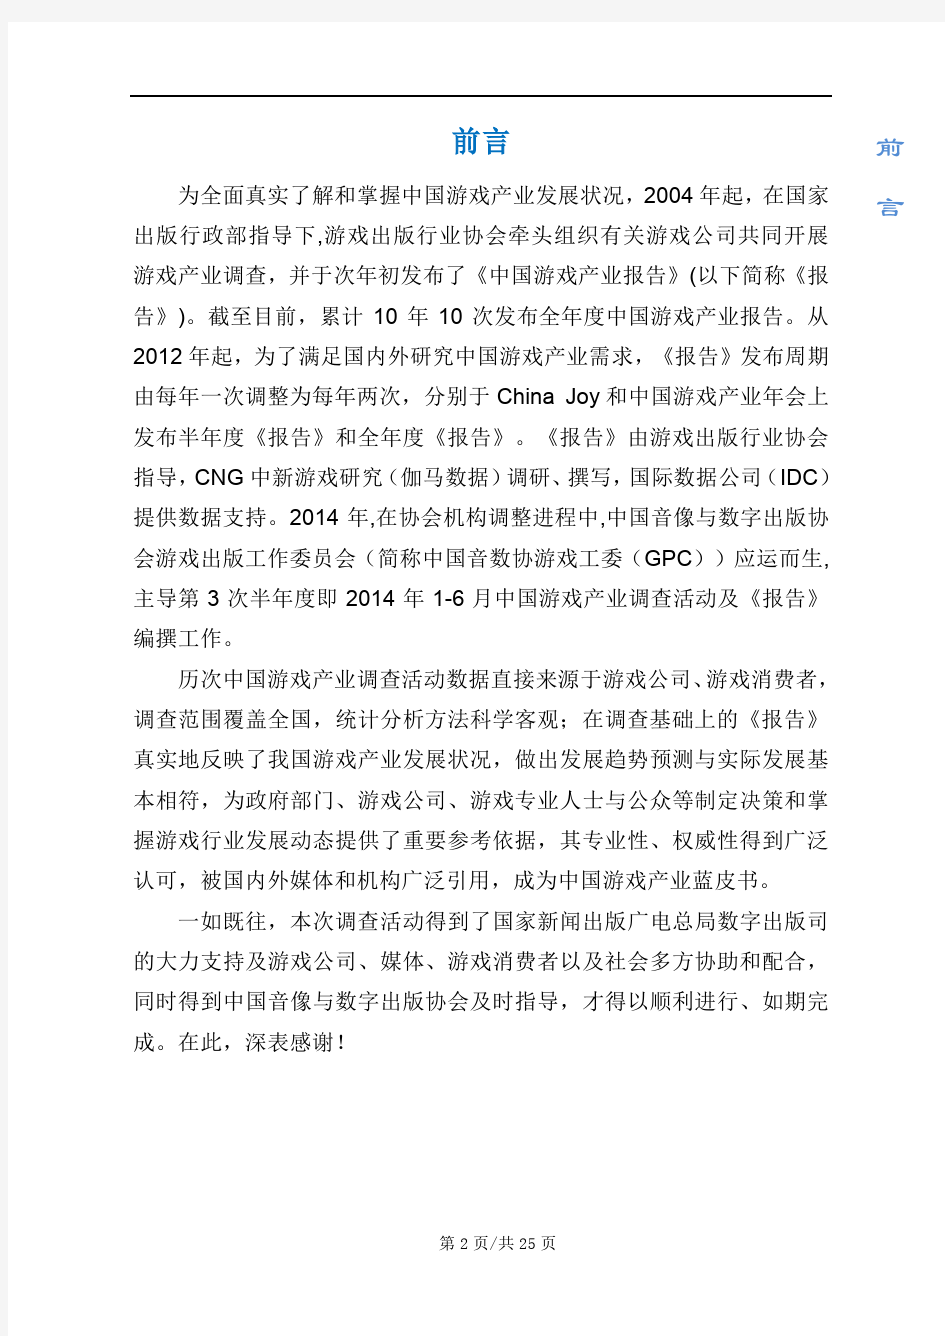 2014年1-6月中国游戏产业报告